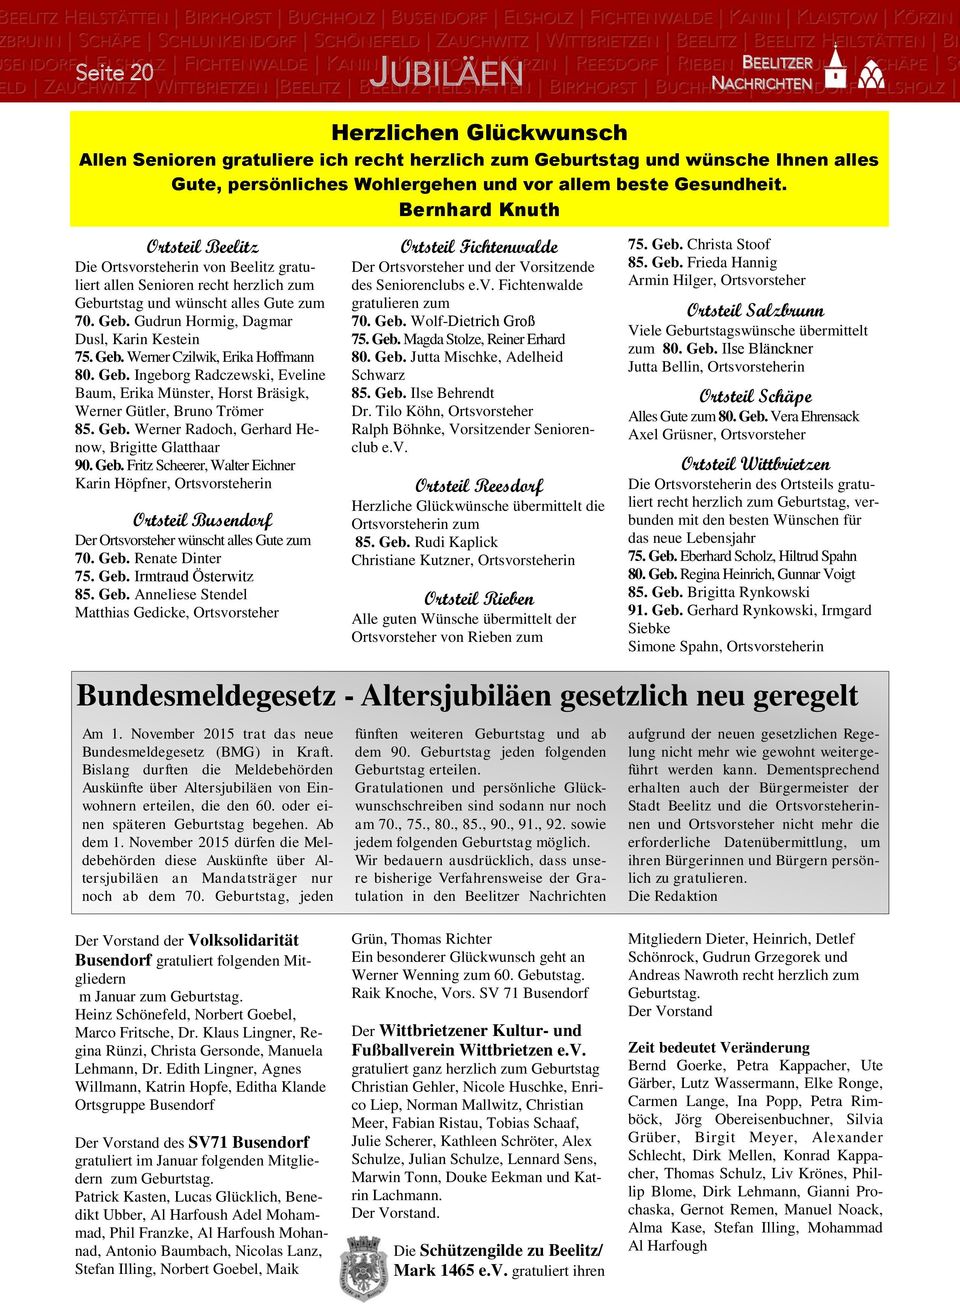 Geb. Werner Czilwik, Erika Hoffmann 80. Geb. Ingeborg Radczewski, Eveline Baum, Erika Münster, Horst Bräsigk, Werner Gütler, Bruno Trömer 85. Geb. Werner Radoch, Gerhard Henow, Brigitte Glatthaar 90.